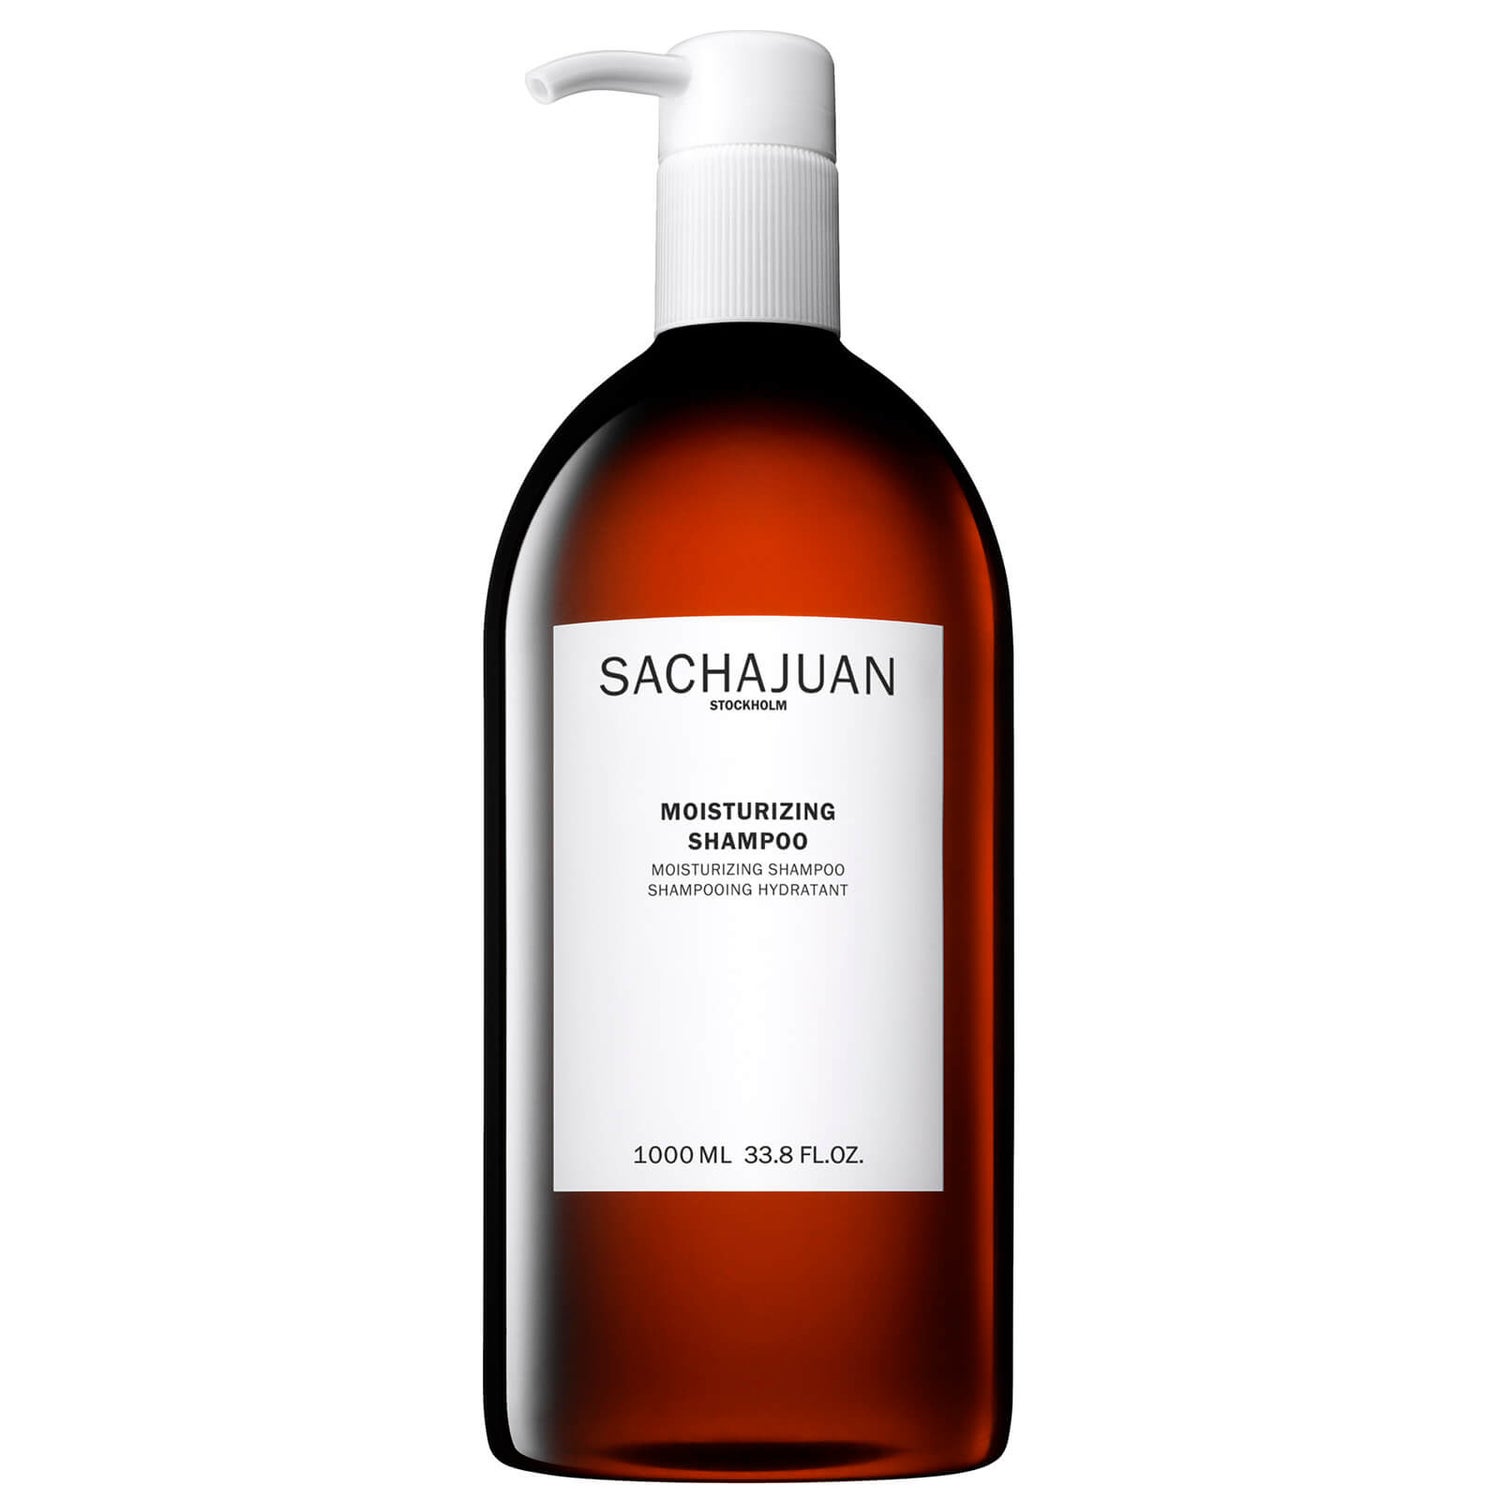 Sachajuan Moisturizing Shampoo 1000ml